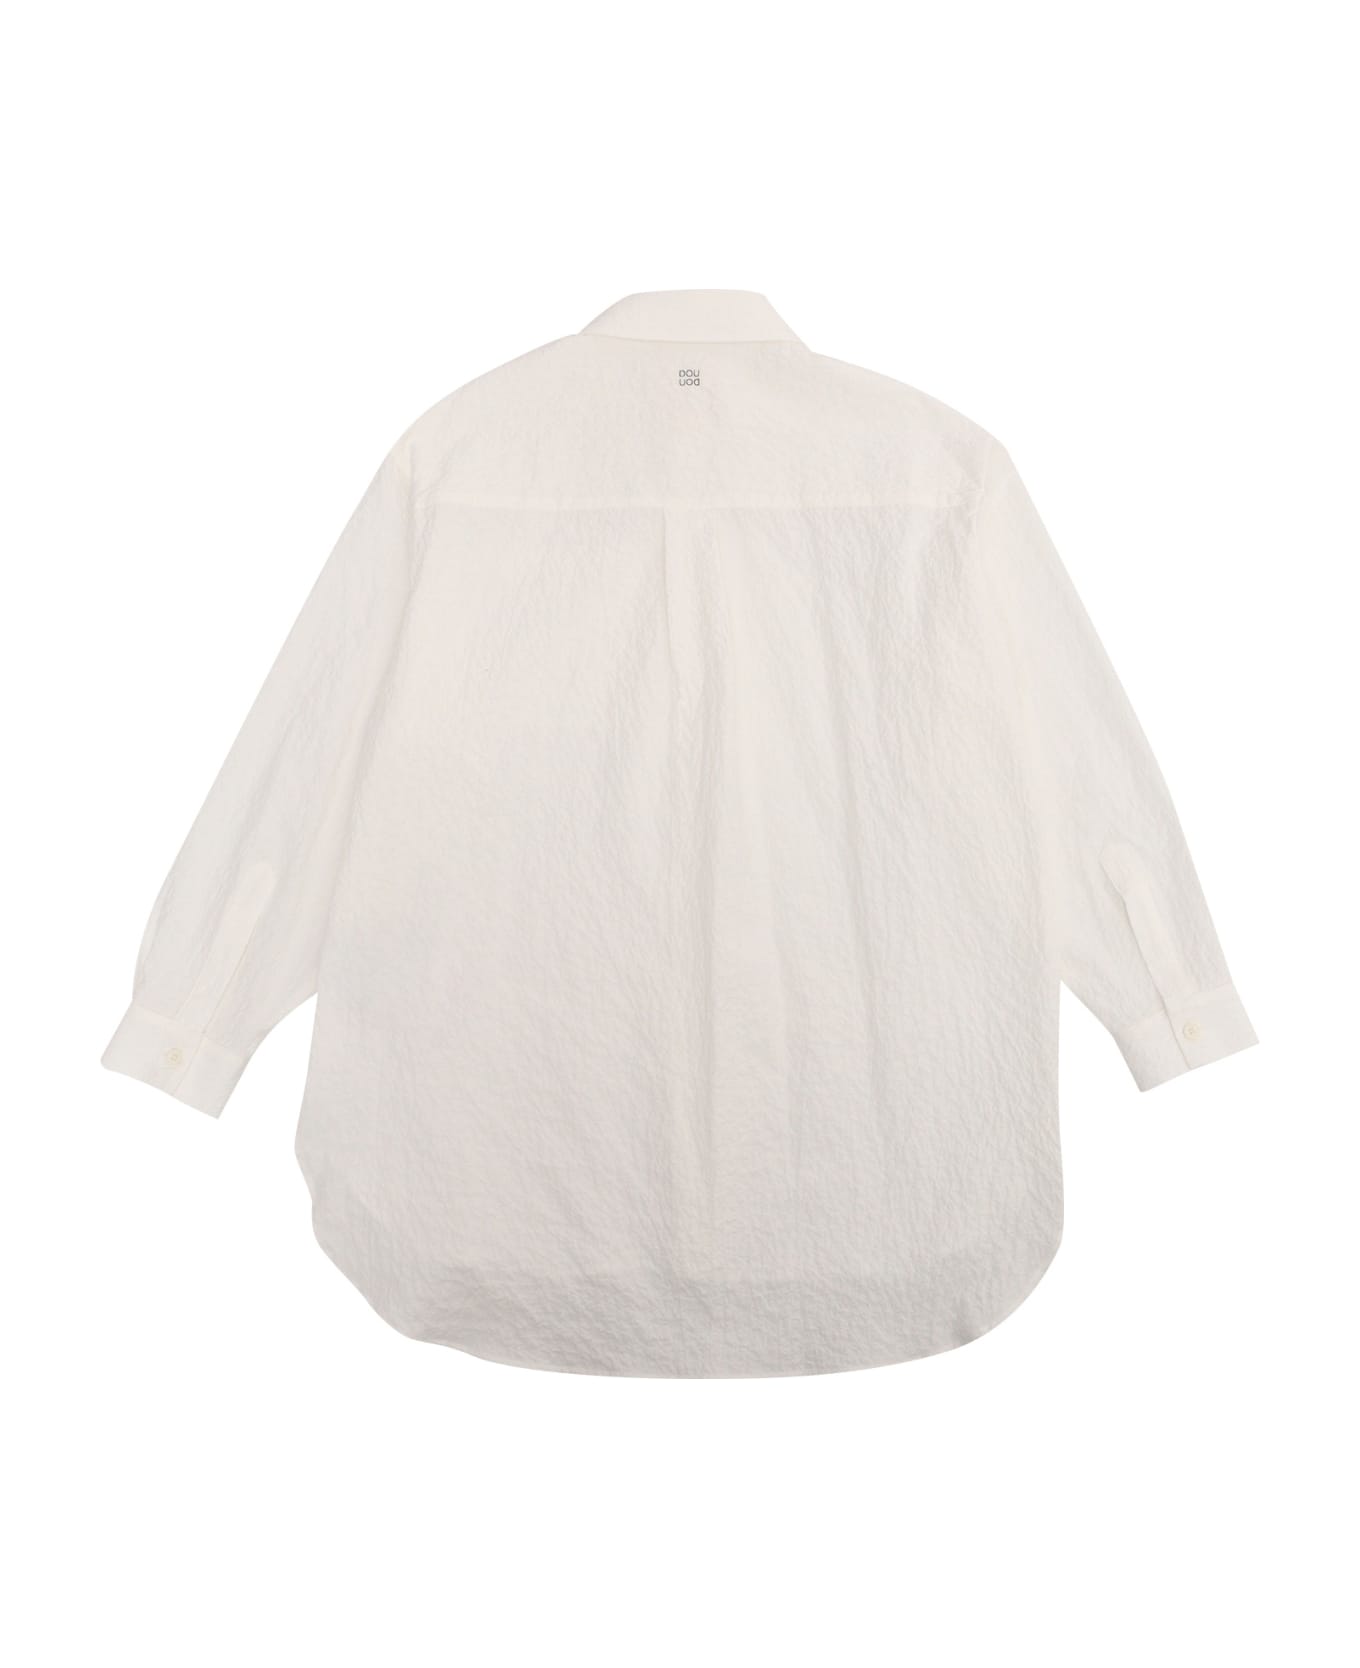 Douuod White Shirt - WHITE